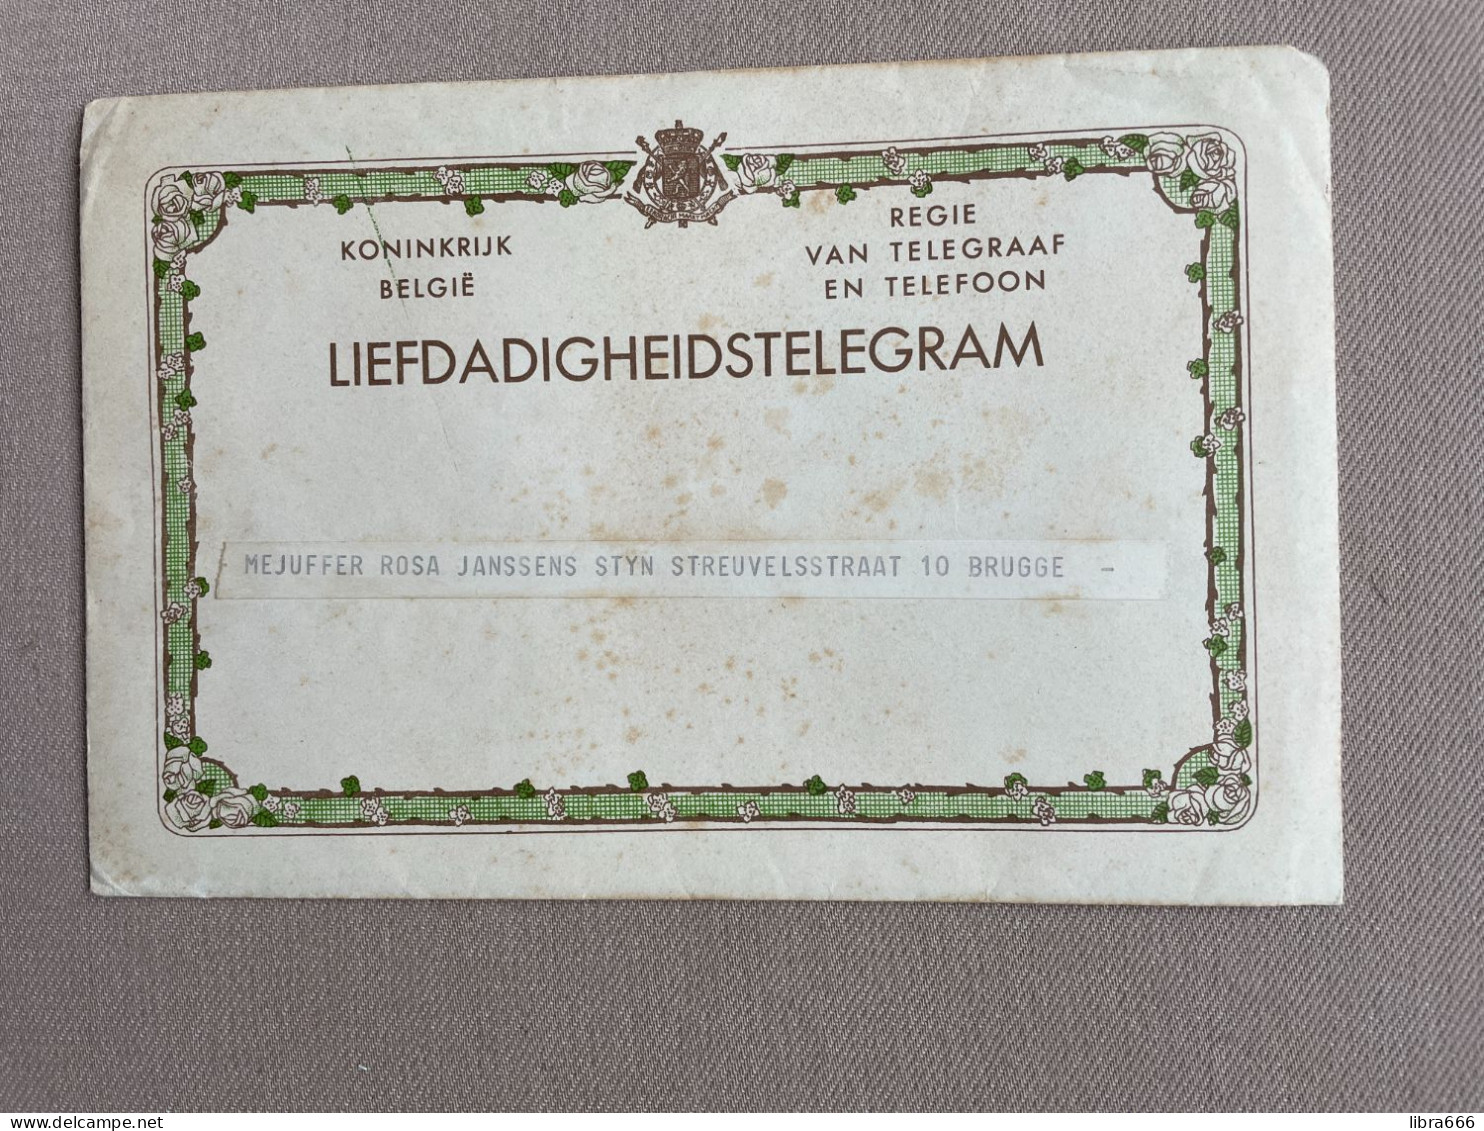 LIEFDADIGHEIDSTELEGRAM Met ENVELOP - BRUGGE (1959) - JANSSSENS / SIEUW - Telegramme